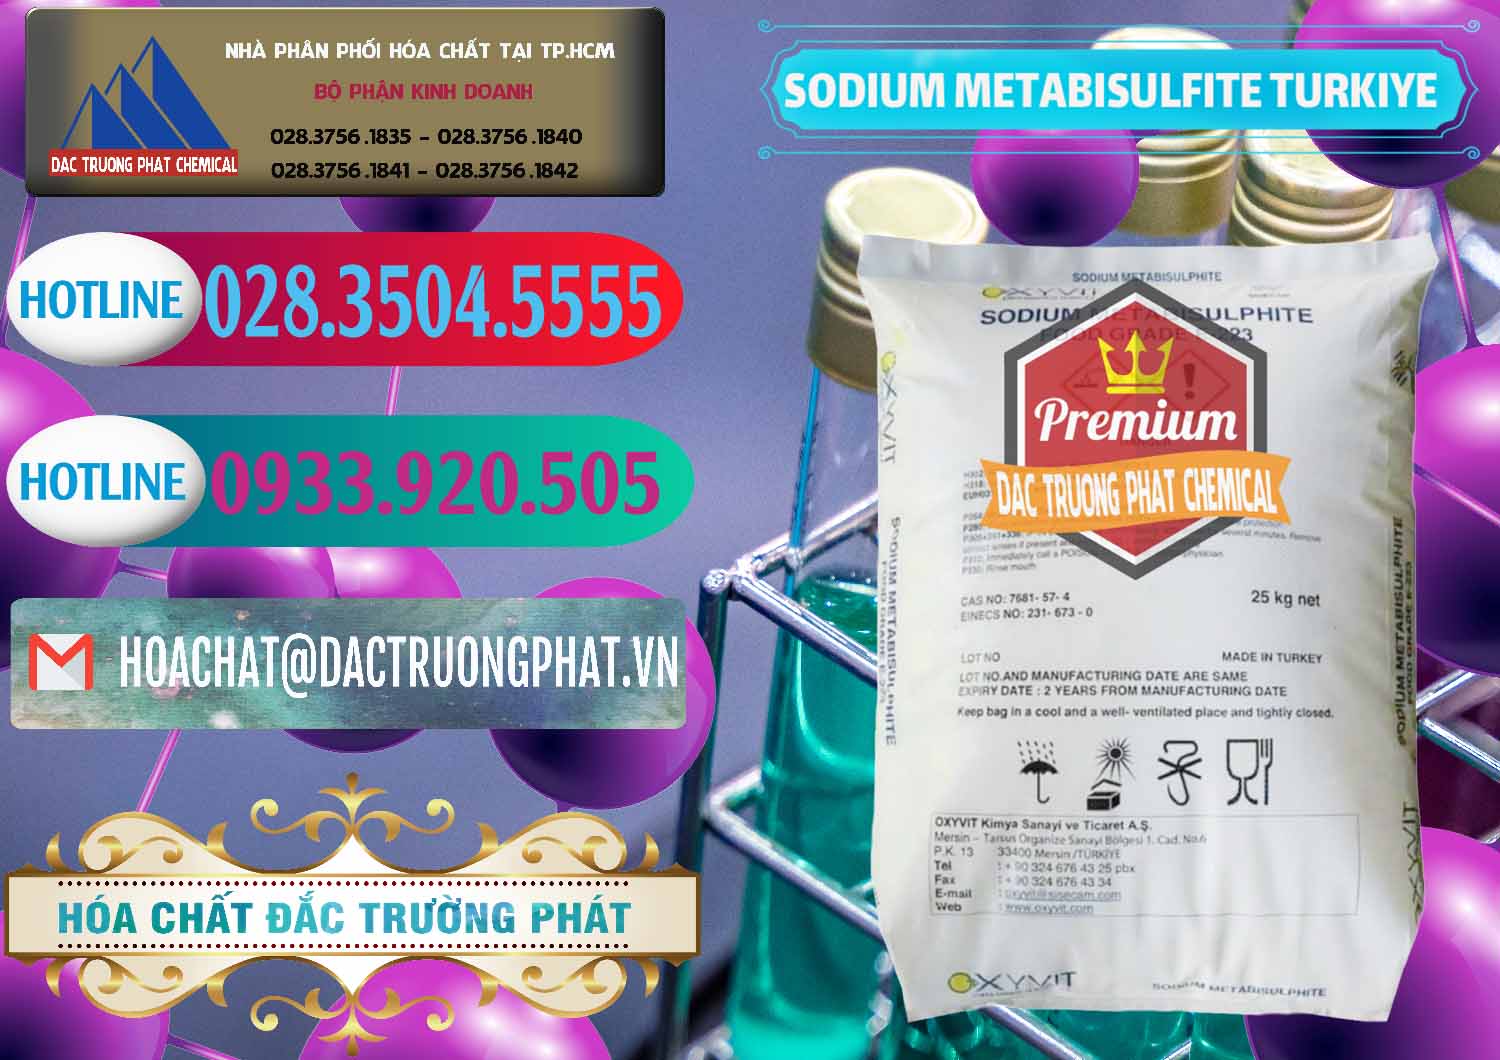 Nơi kinh doanh và bán Sodium Metabisulfite - NA2S2O5 Food Grade E-223 Thổ Nhĩ Kỳ Turkey - 0413 - Chuyên phân phối ( cung cấp ) hóa chất tại TP.HCM - truongphat.vn